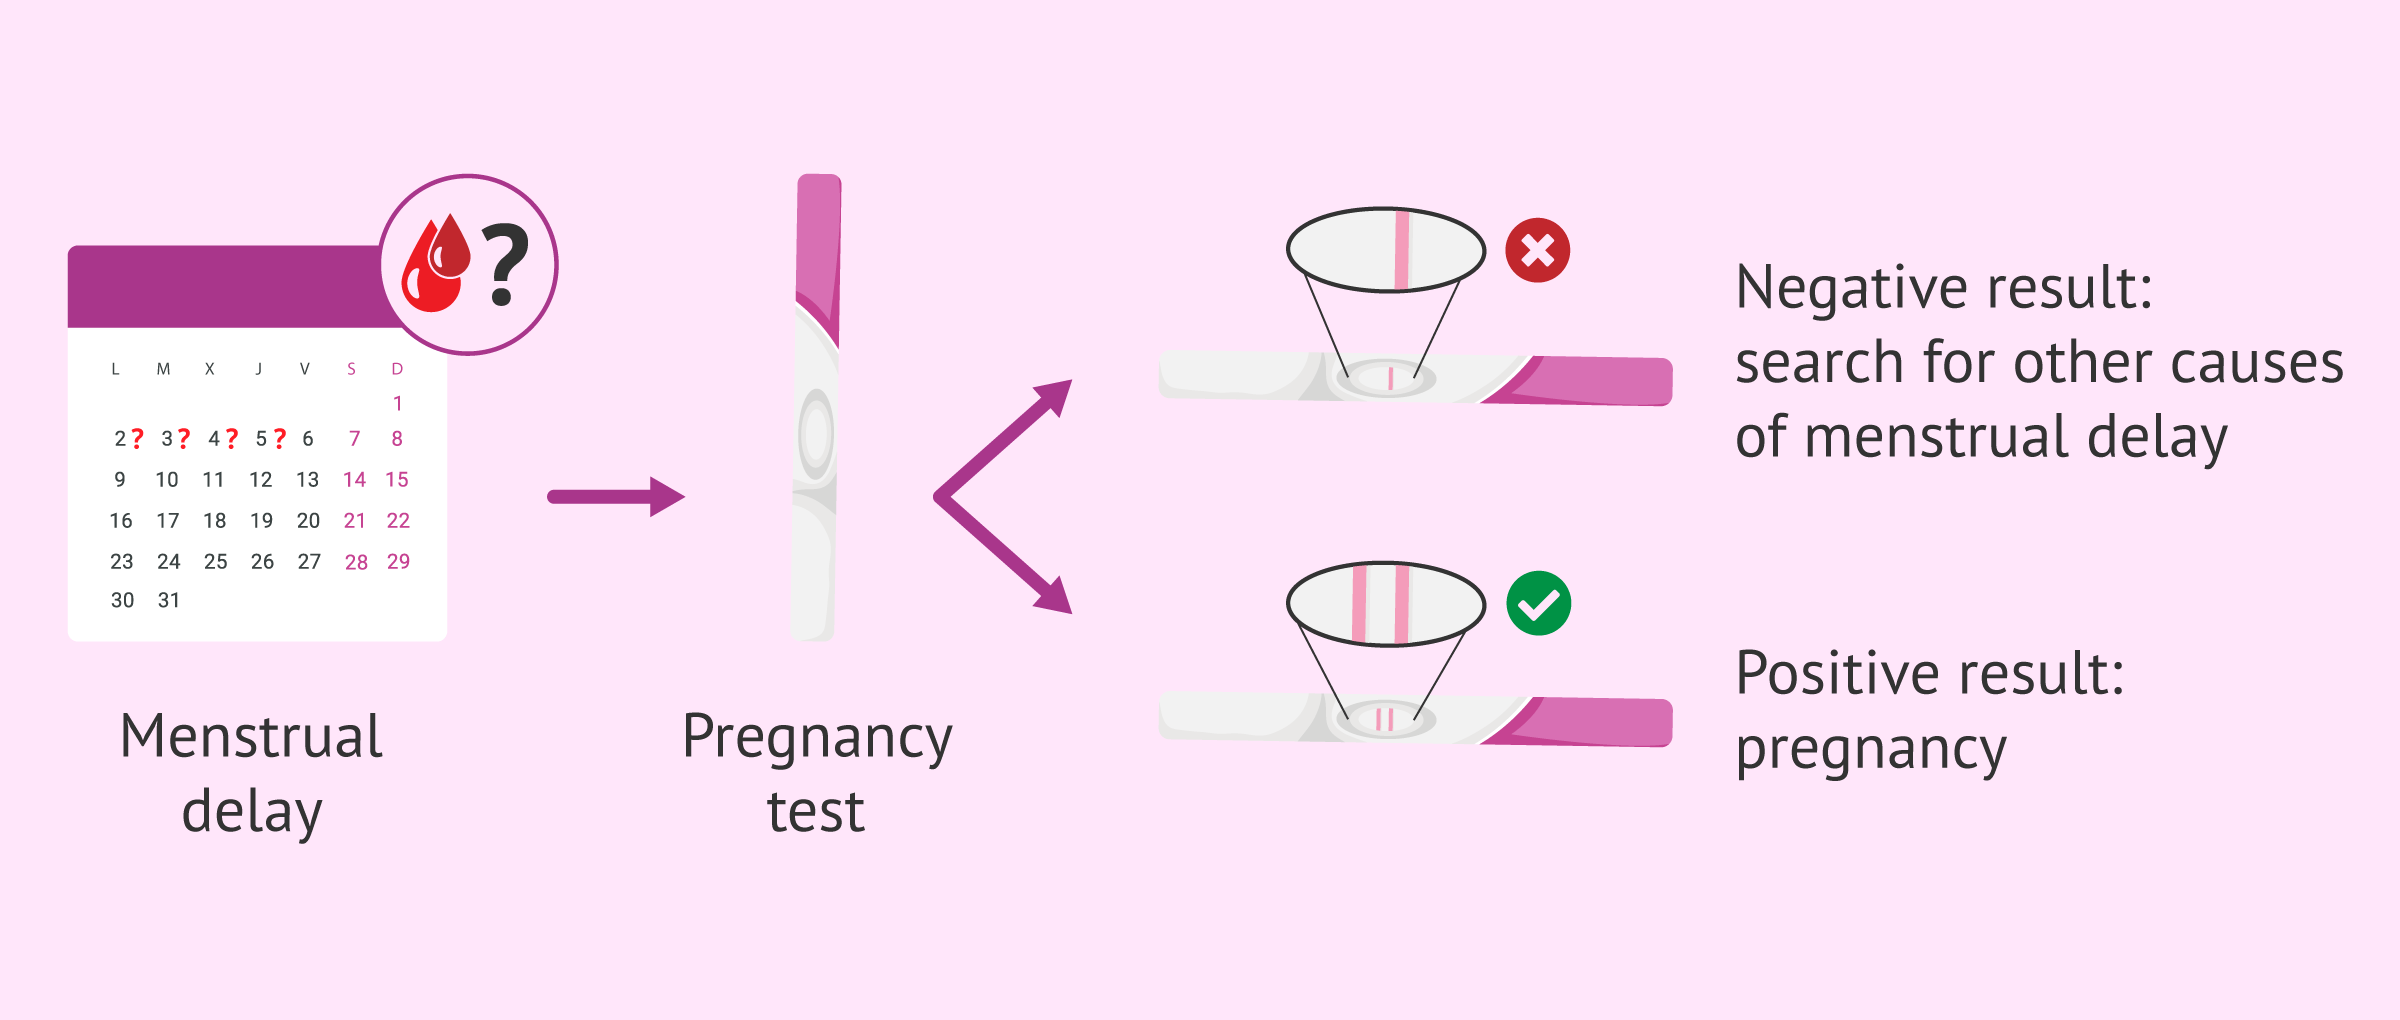 Menstrual delay and pregnancy